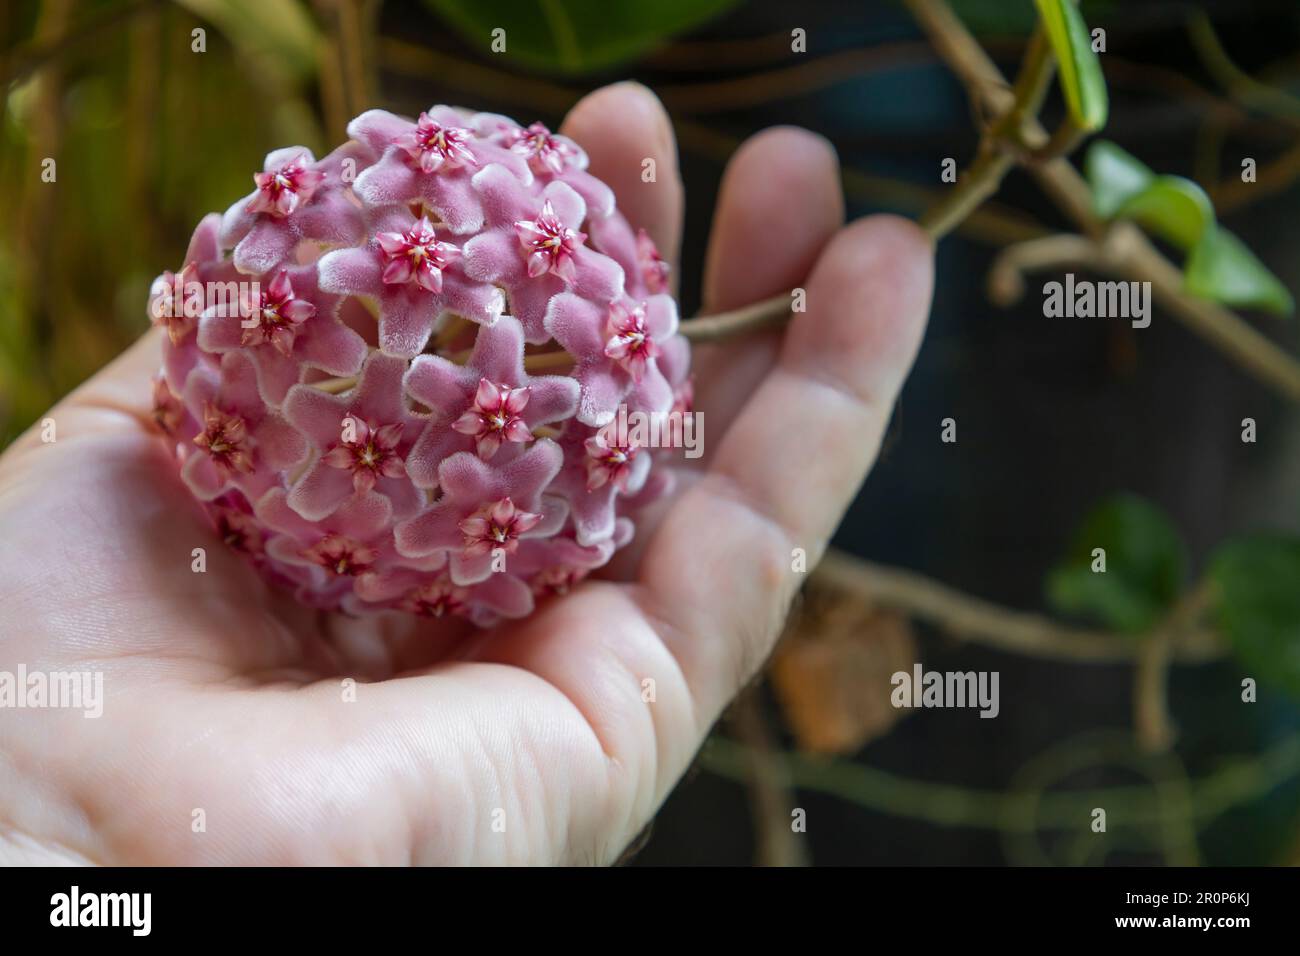 Hoya-Carnosa-Blumen. Porzellanblüten- oder Wachspflanze. Rosa Blütenkugeln auf der Hand Stockfoto